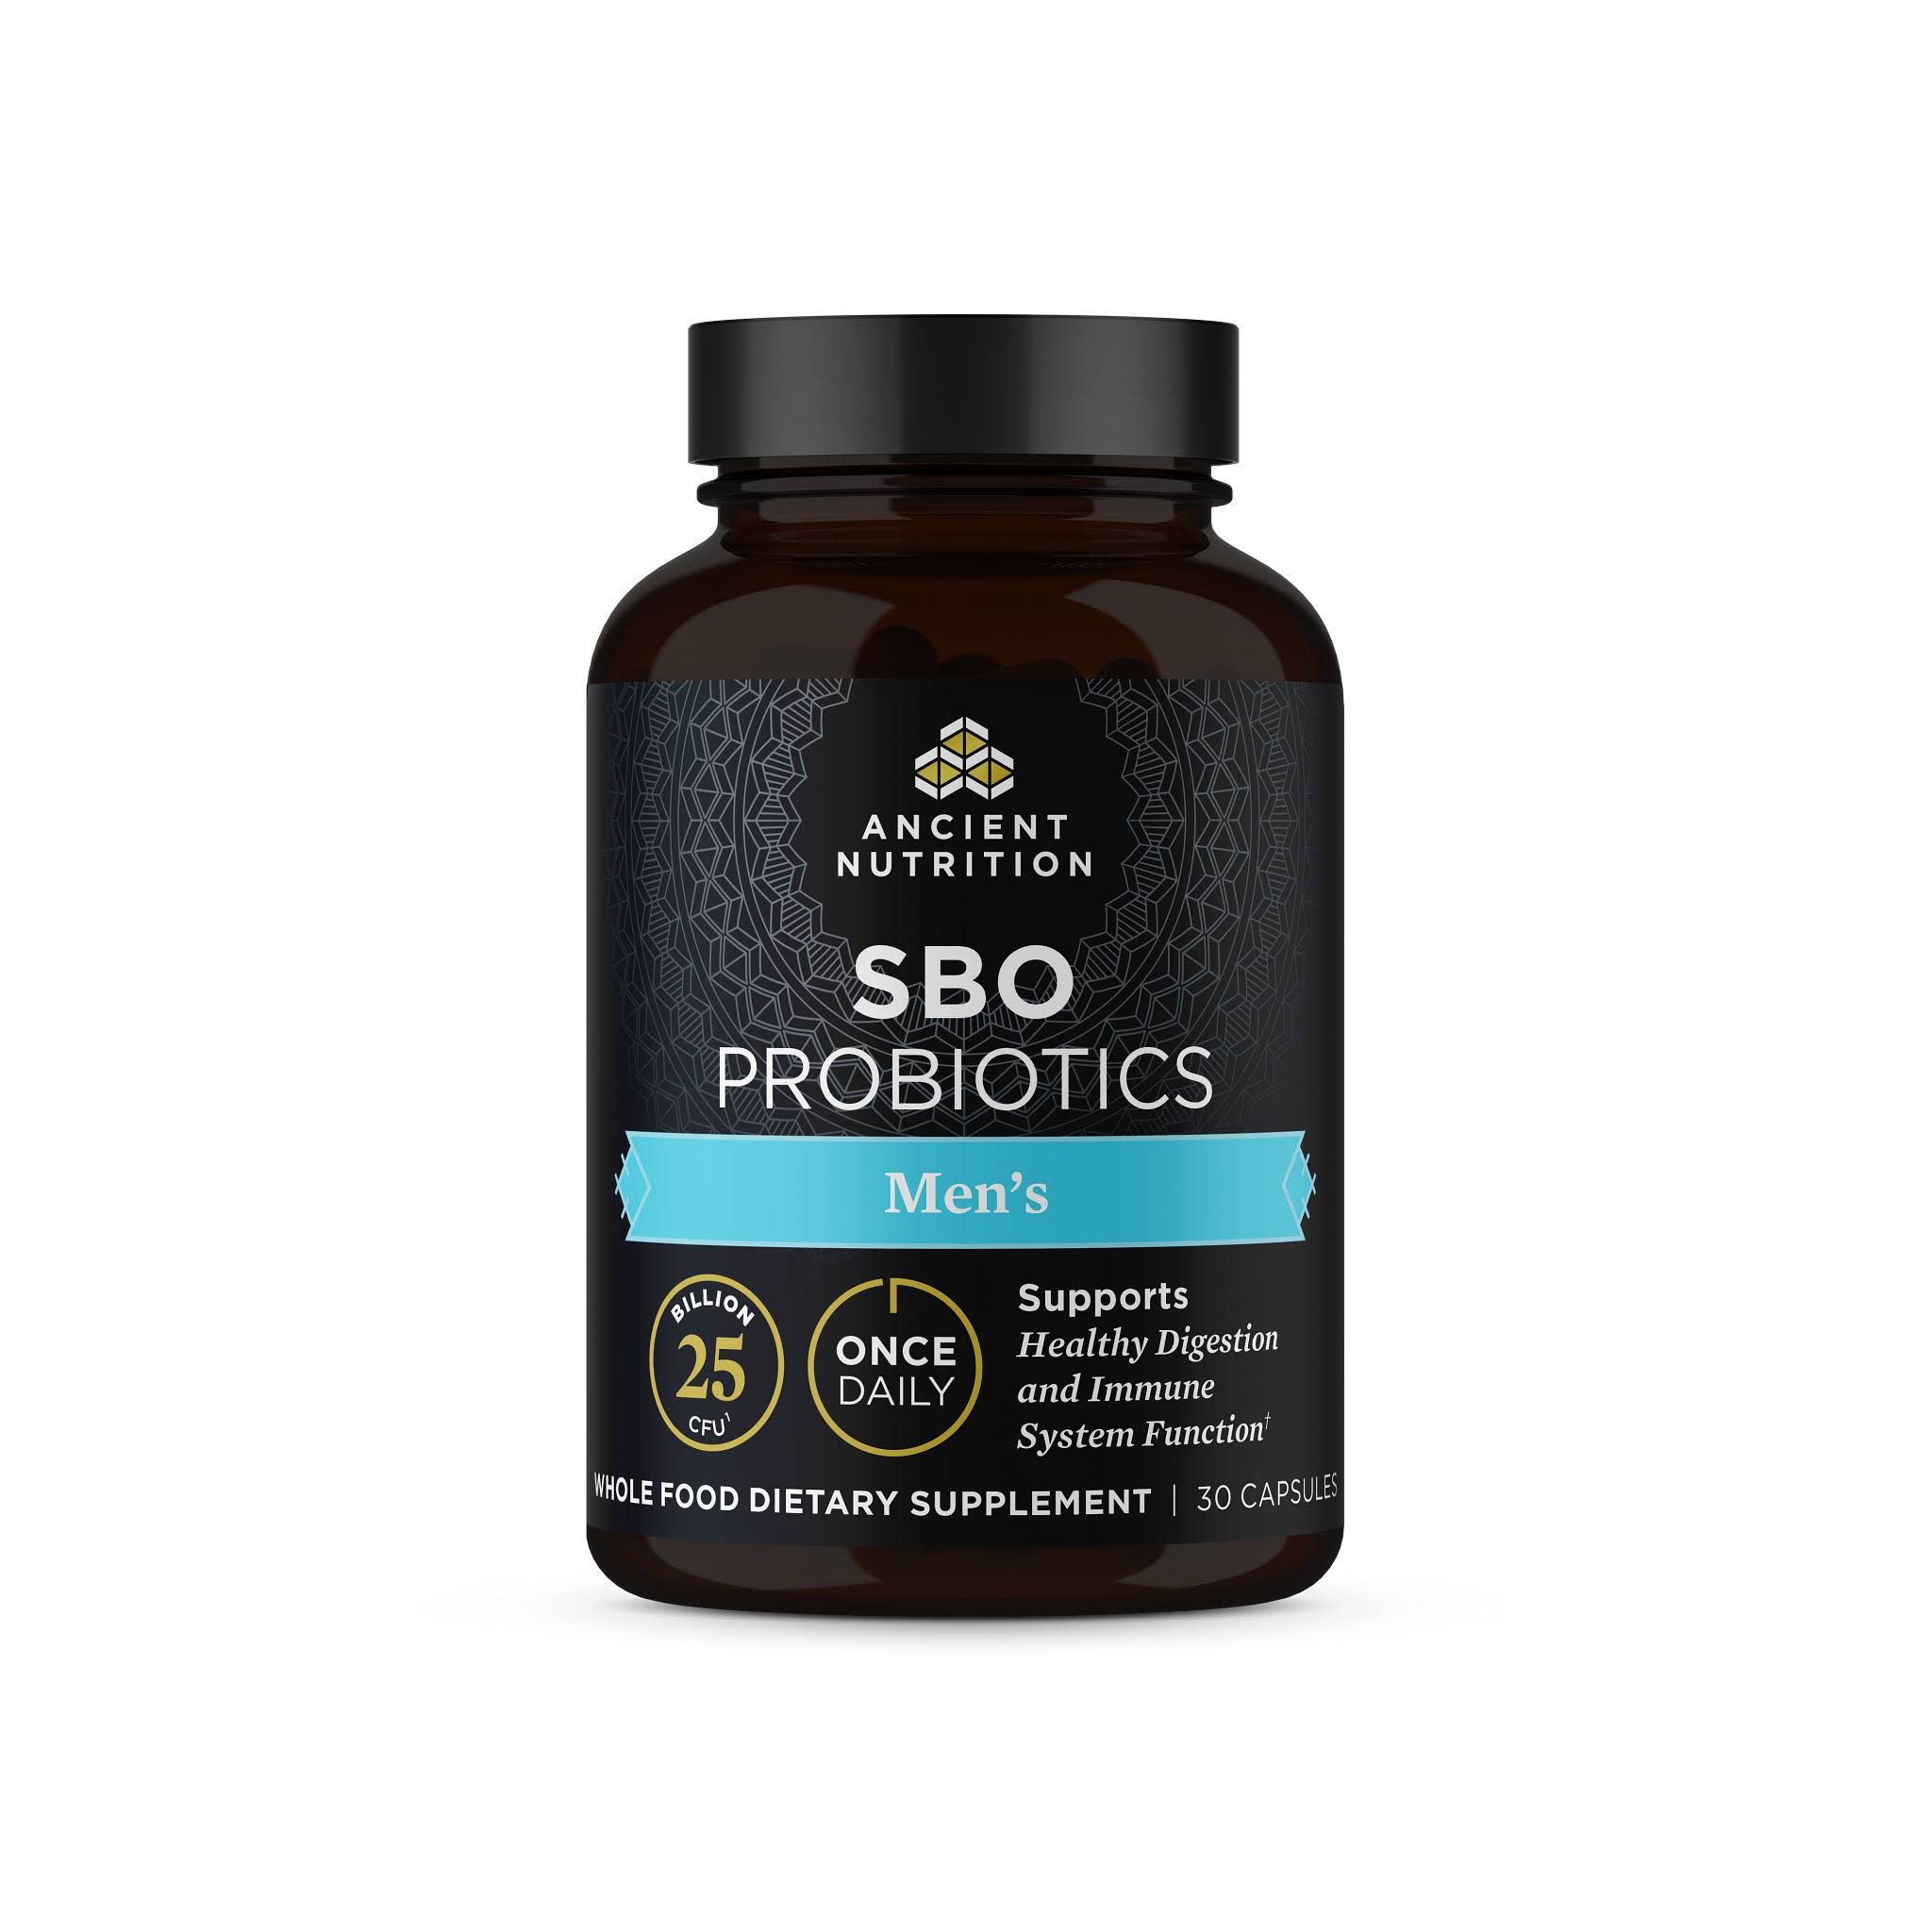 Ancient Nutrition SBO Probiotics, Men's, Capsules - 30 capsules